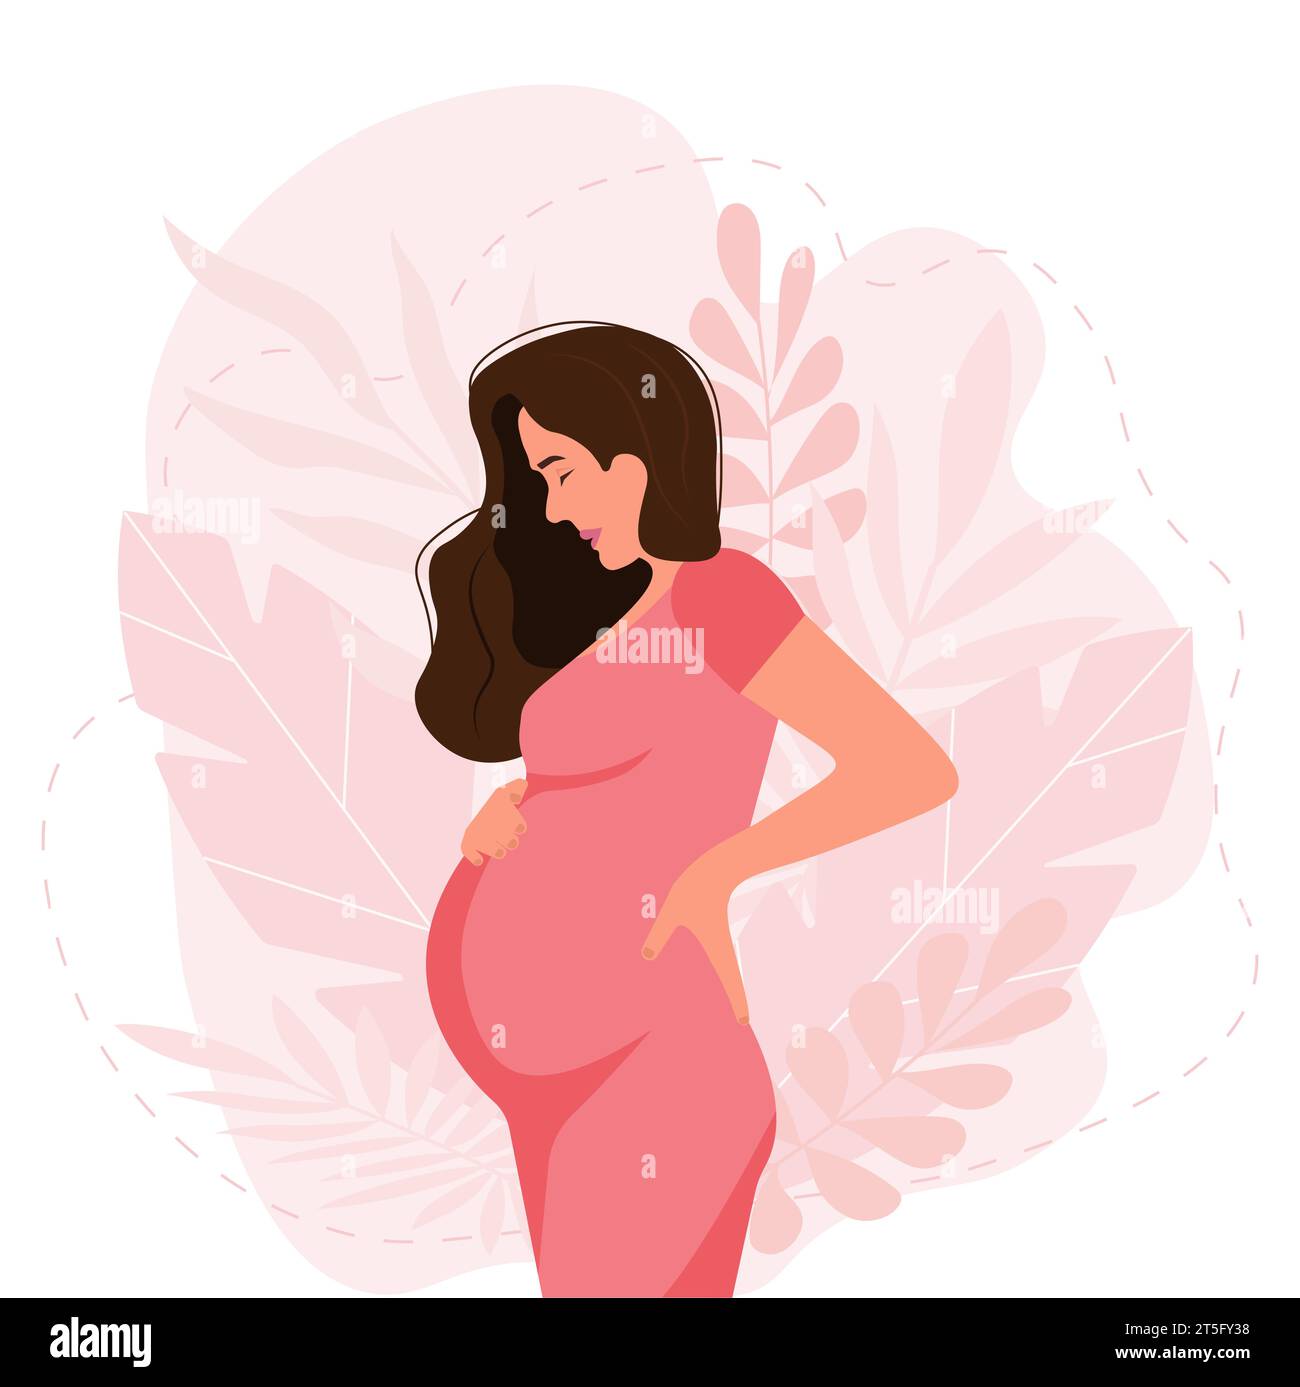 Ceinture de sécurité pour la grossesse et les femmes enceintes – 👶 Parents  Sereins